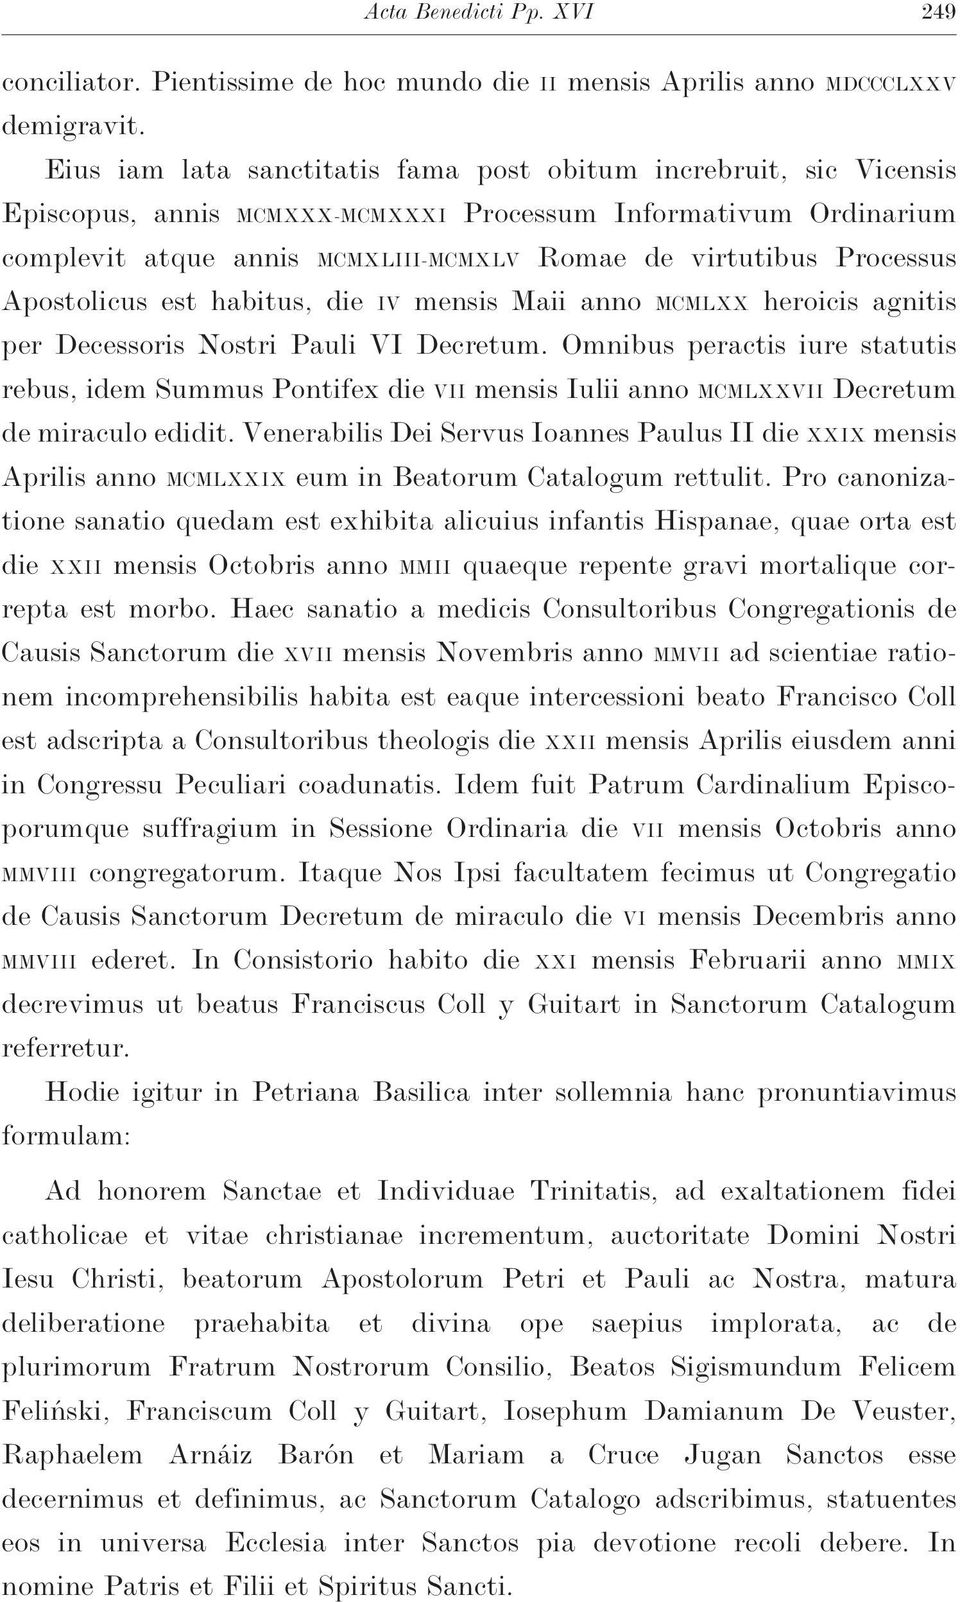 Apostolicus est habitus,die IV mensis Maii anno MCMLXX heroicis agnitis per Decessoris Nostri Pauli VI Decretum.